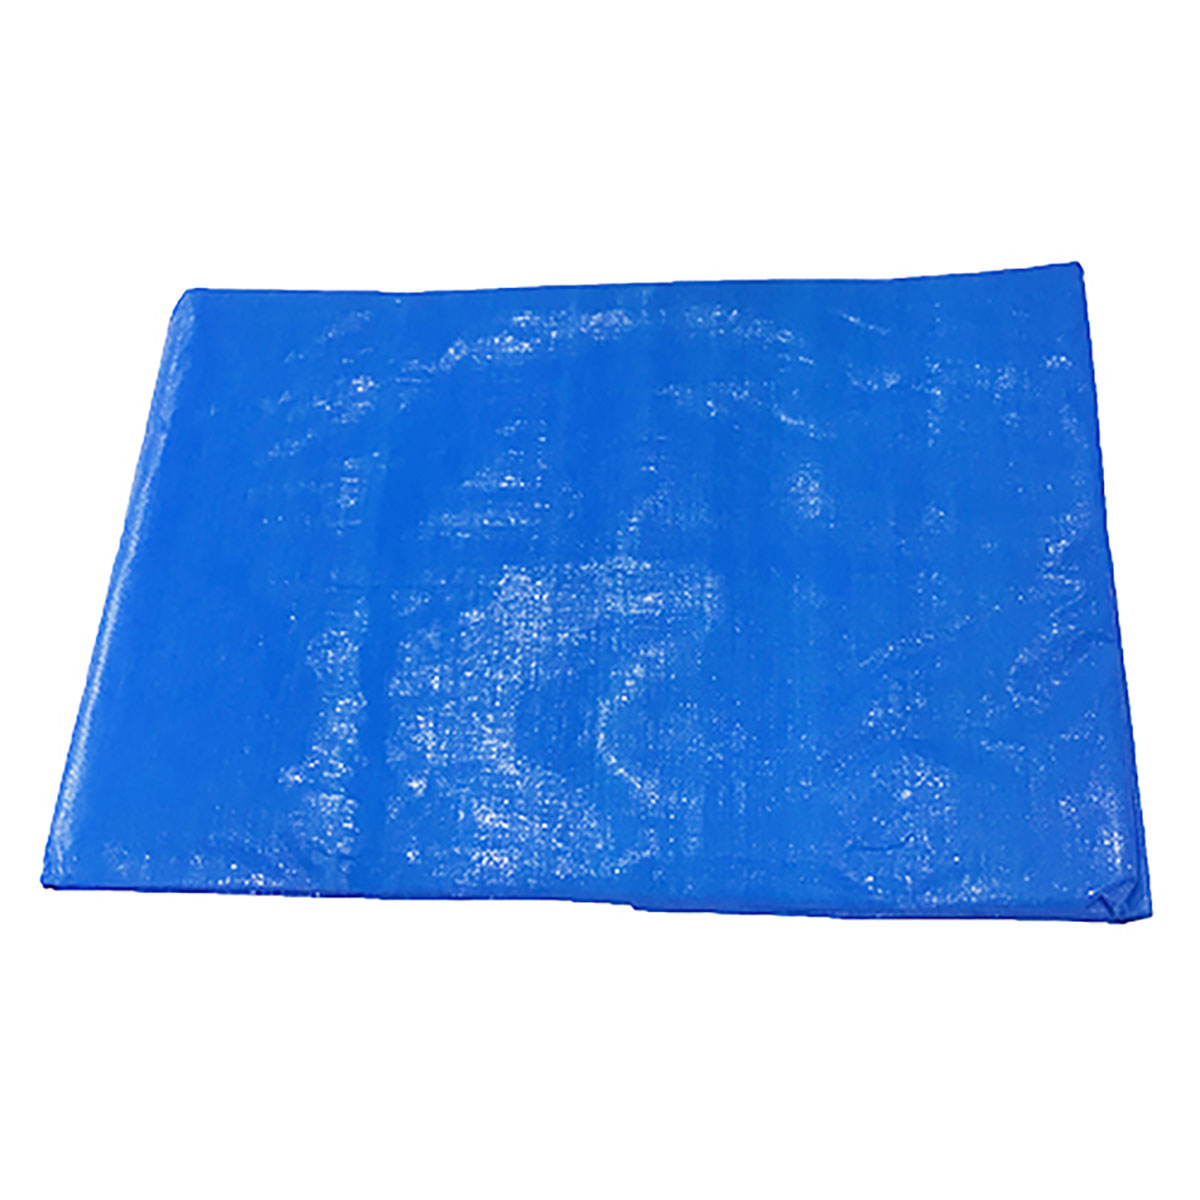 ブルーシート 巾約1.7×長さ約1.7m #3000